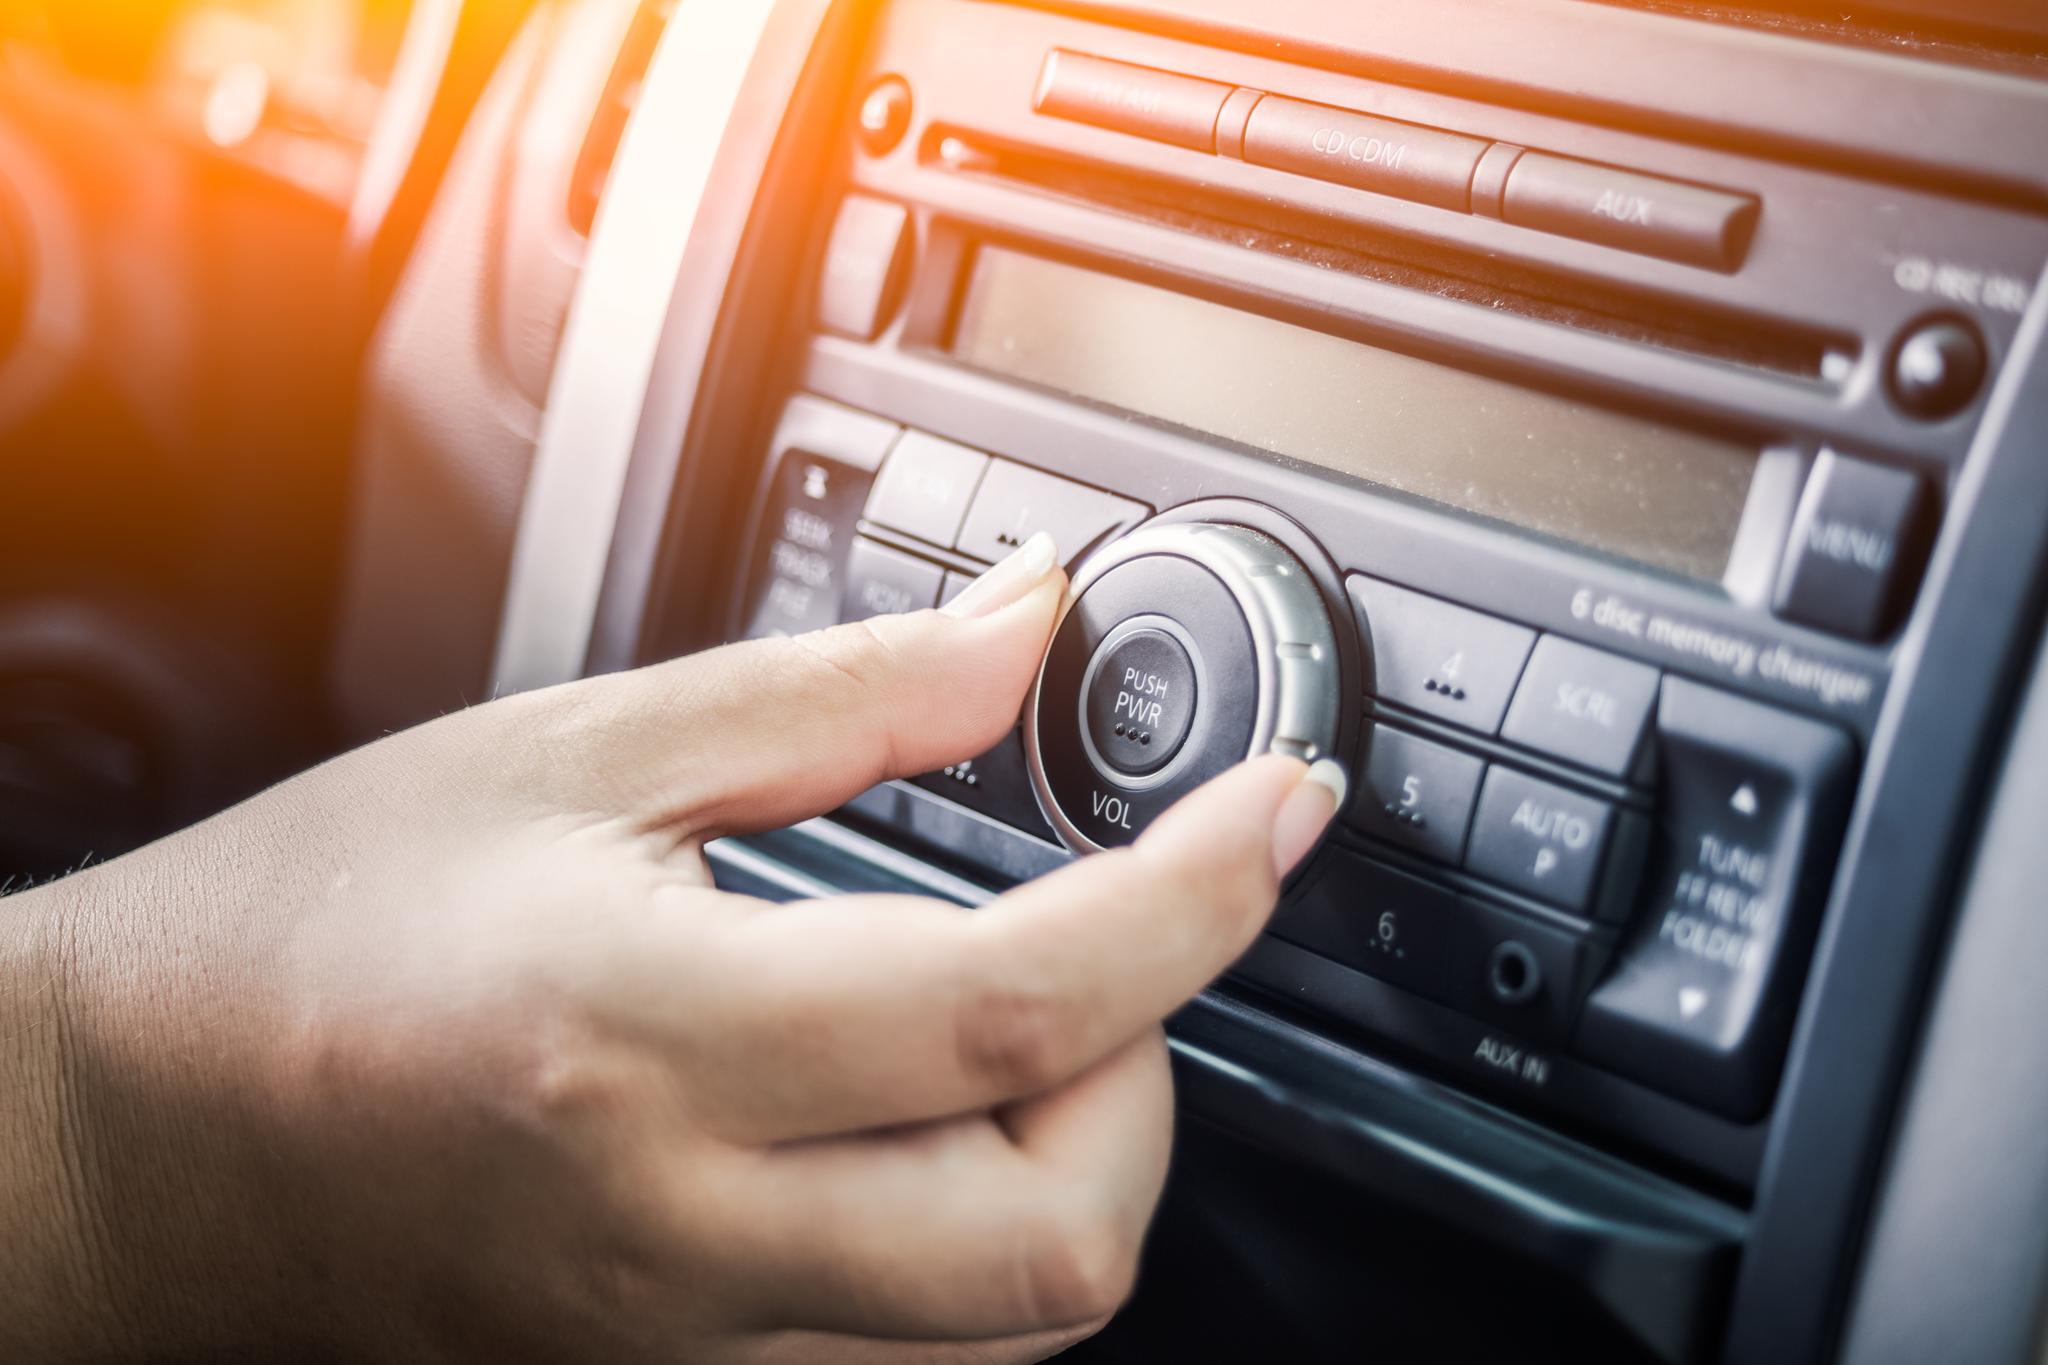 Daglig radiolytting har stupt det siste året, og fortsatt har bare litt mer enn halvparten av landets biler DAB-radio.